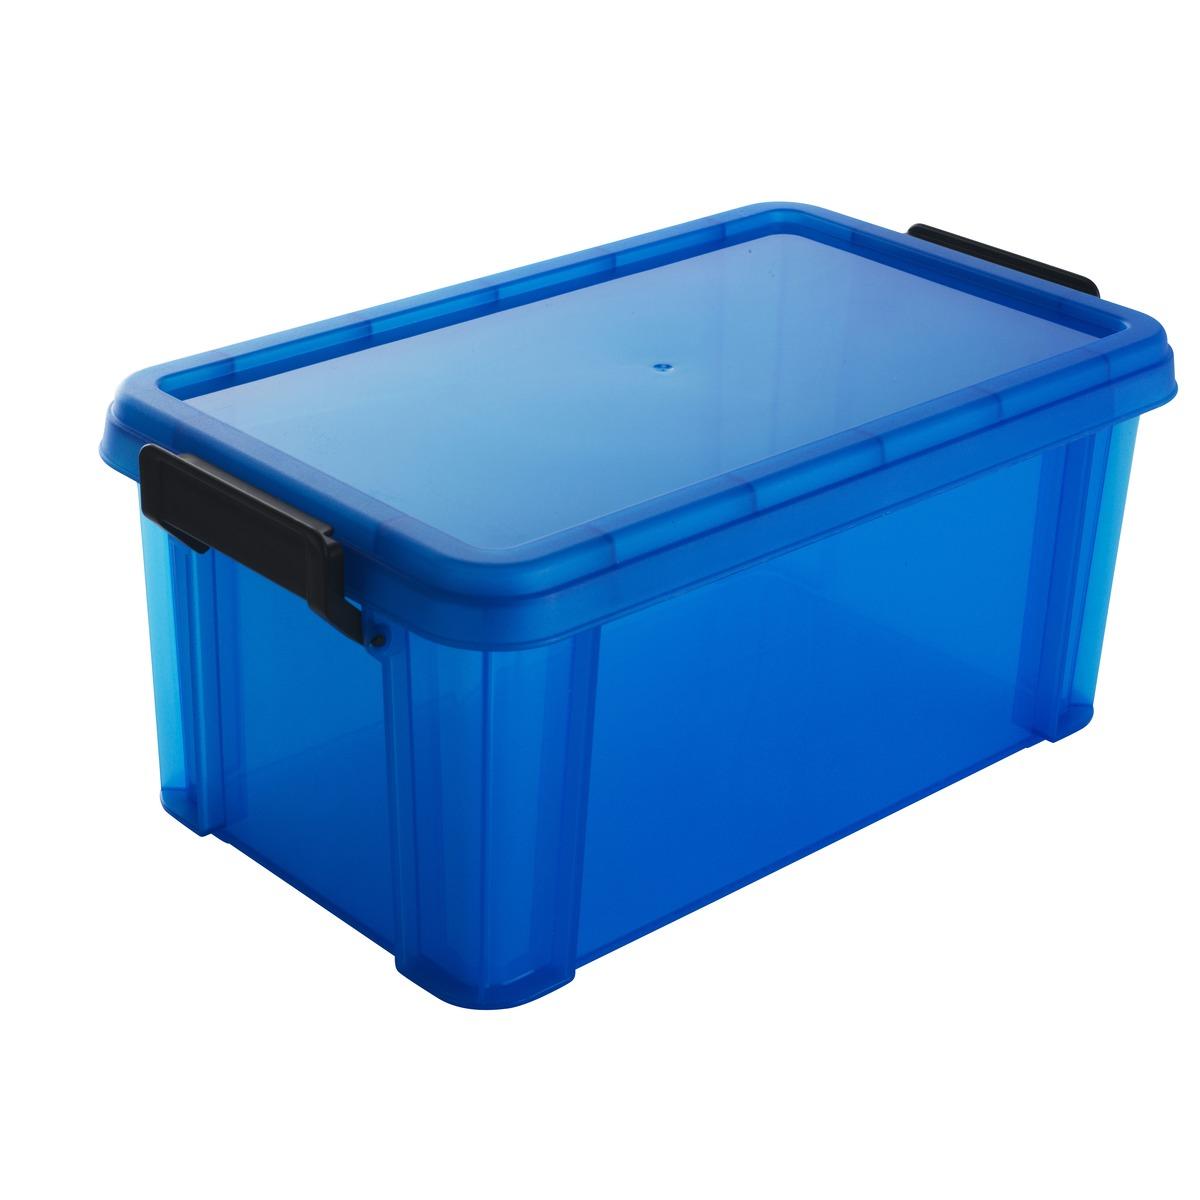 Le box de rangement en plastique - 6 litres - Bleu fluo